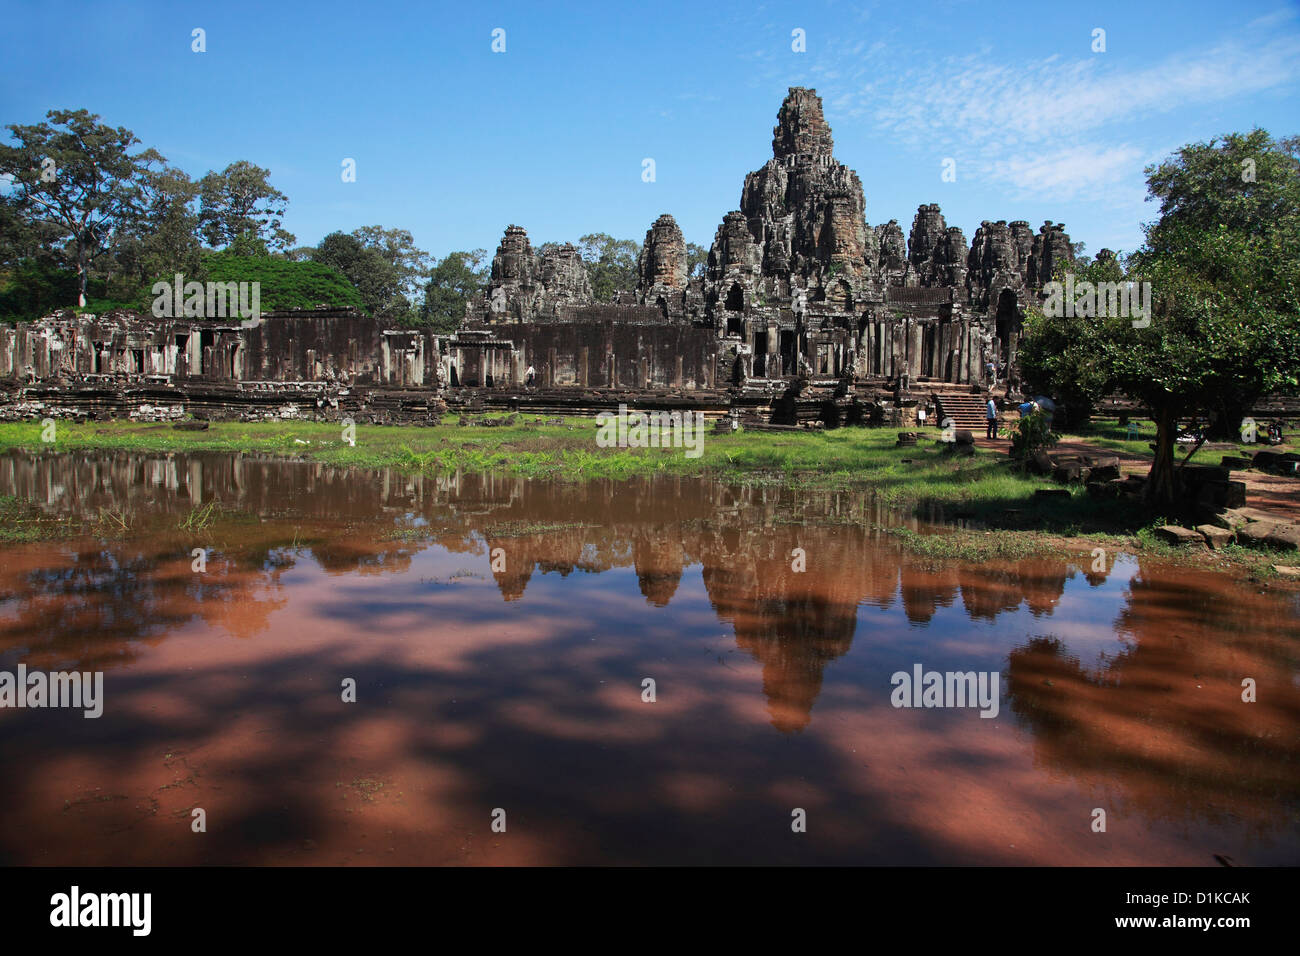 Bayon Temple, Angkor Wat, Cambodia Stock Photo